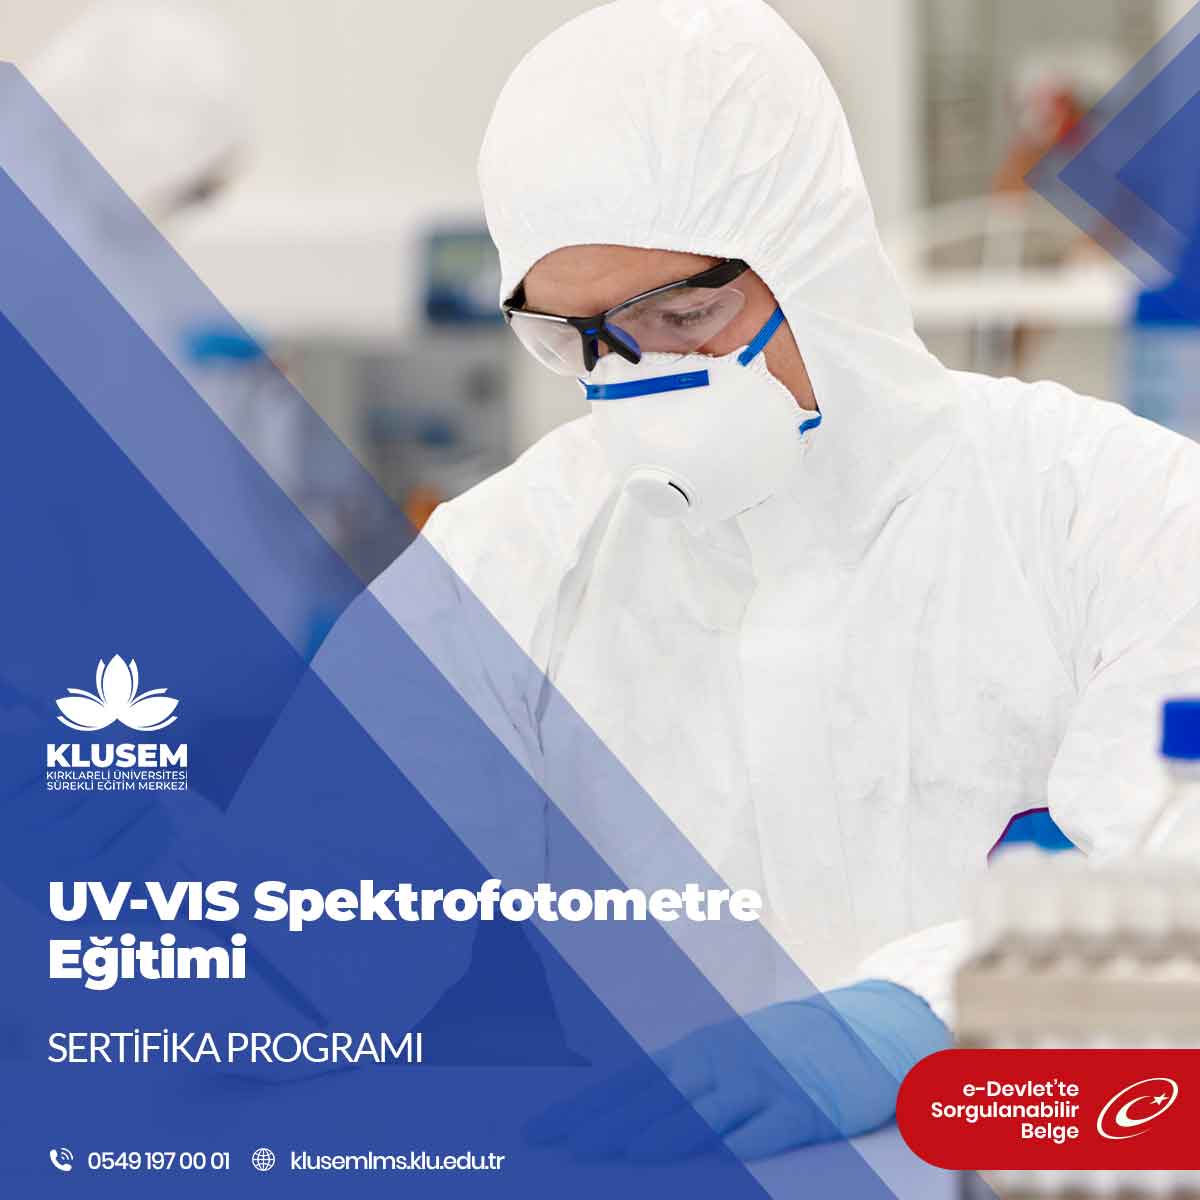 UV-VIS Spektrofotometre Eğitimi, bu analiz cihazını anlama, kullanma ve sonuçları yorumlama becerileri kazandırmayı amaçlayan bir eğitim programıdır.